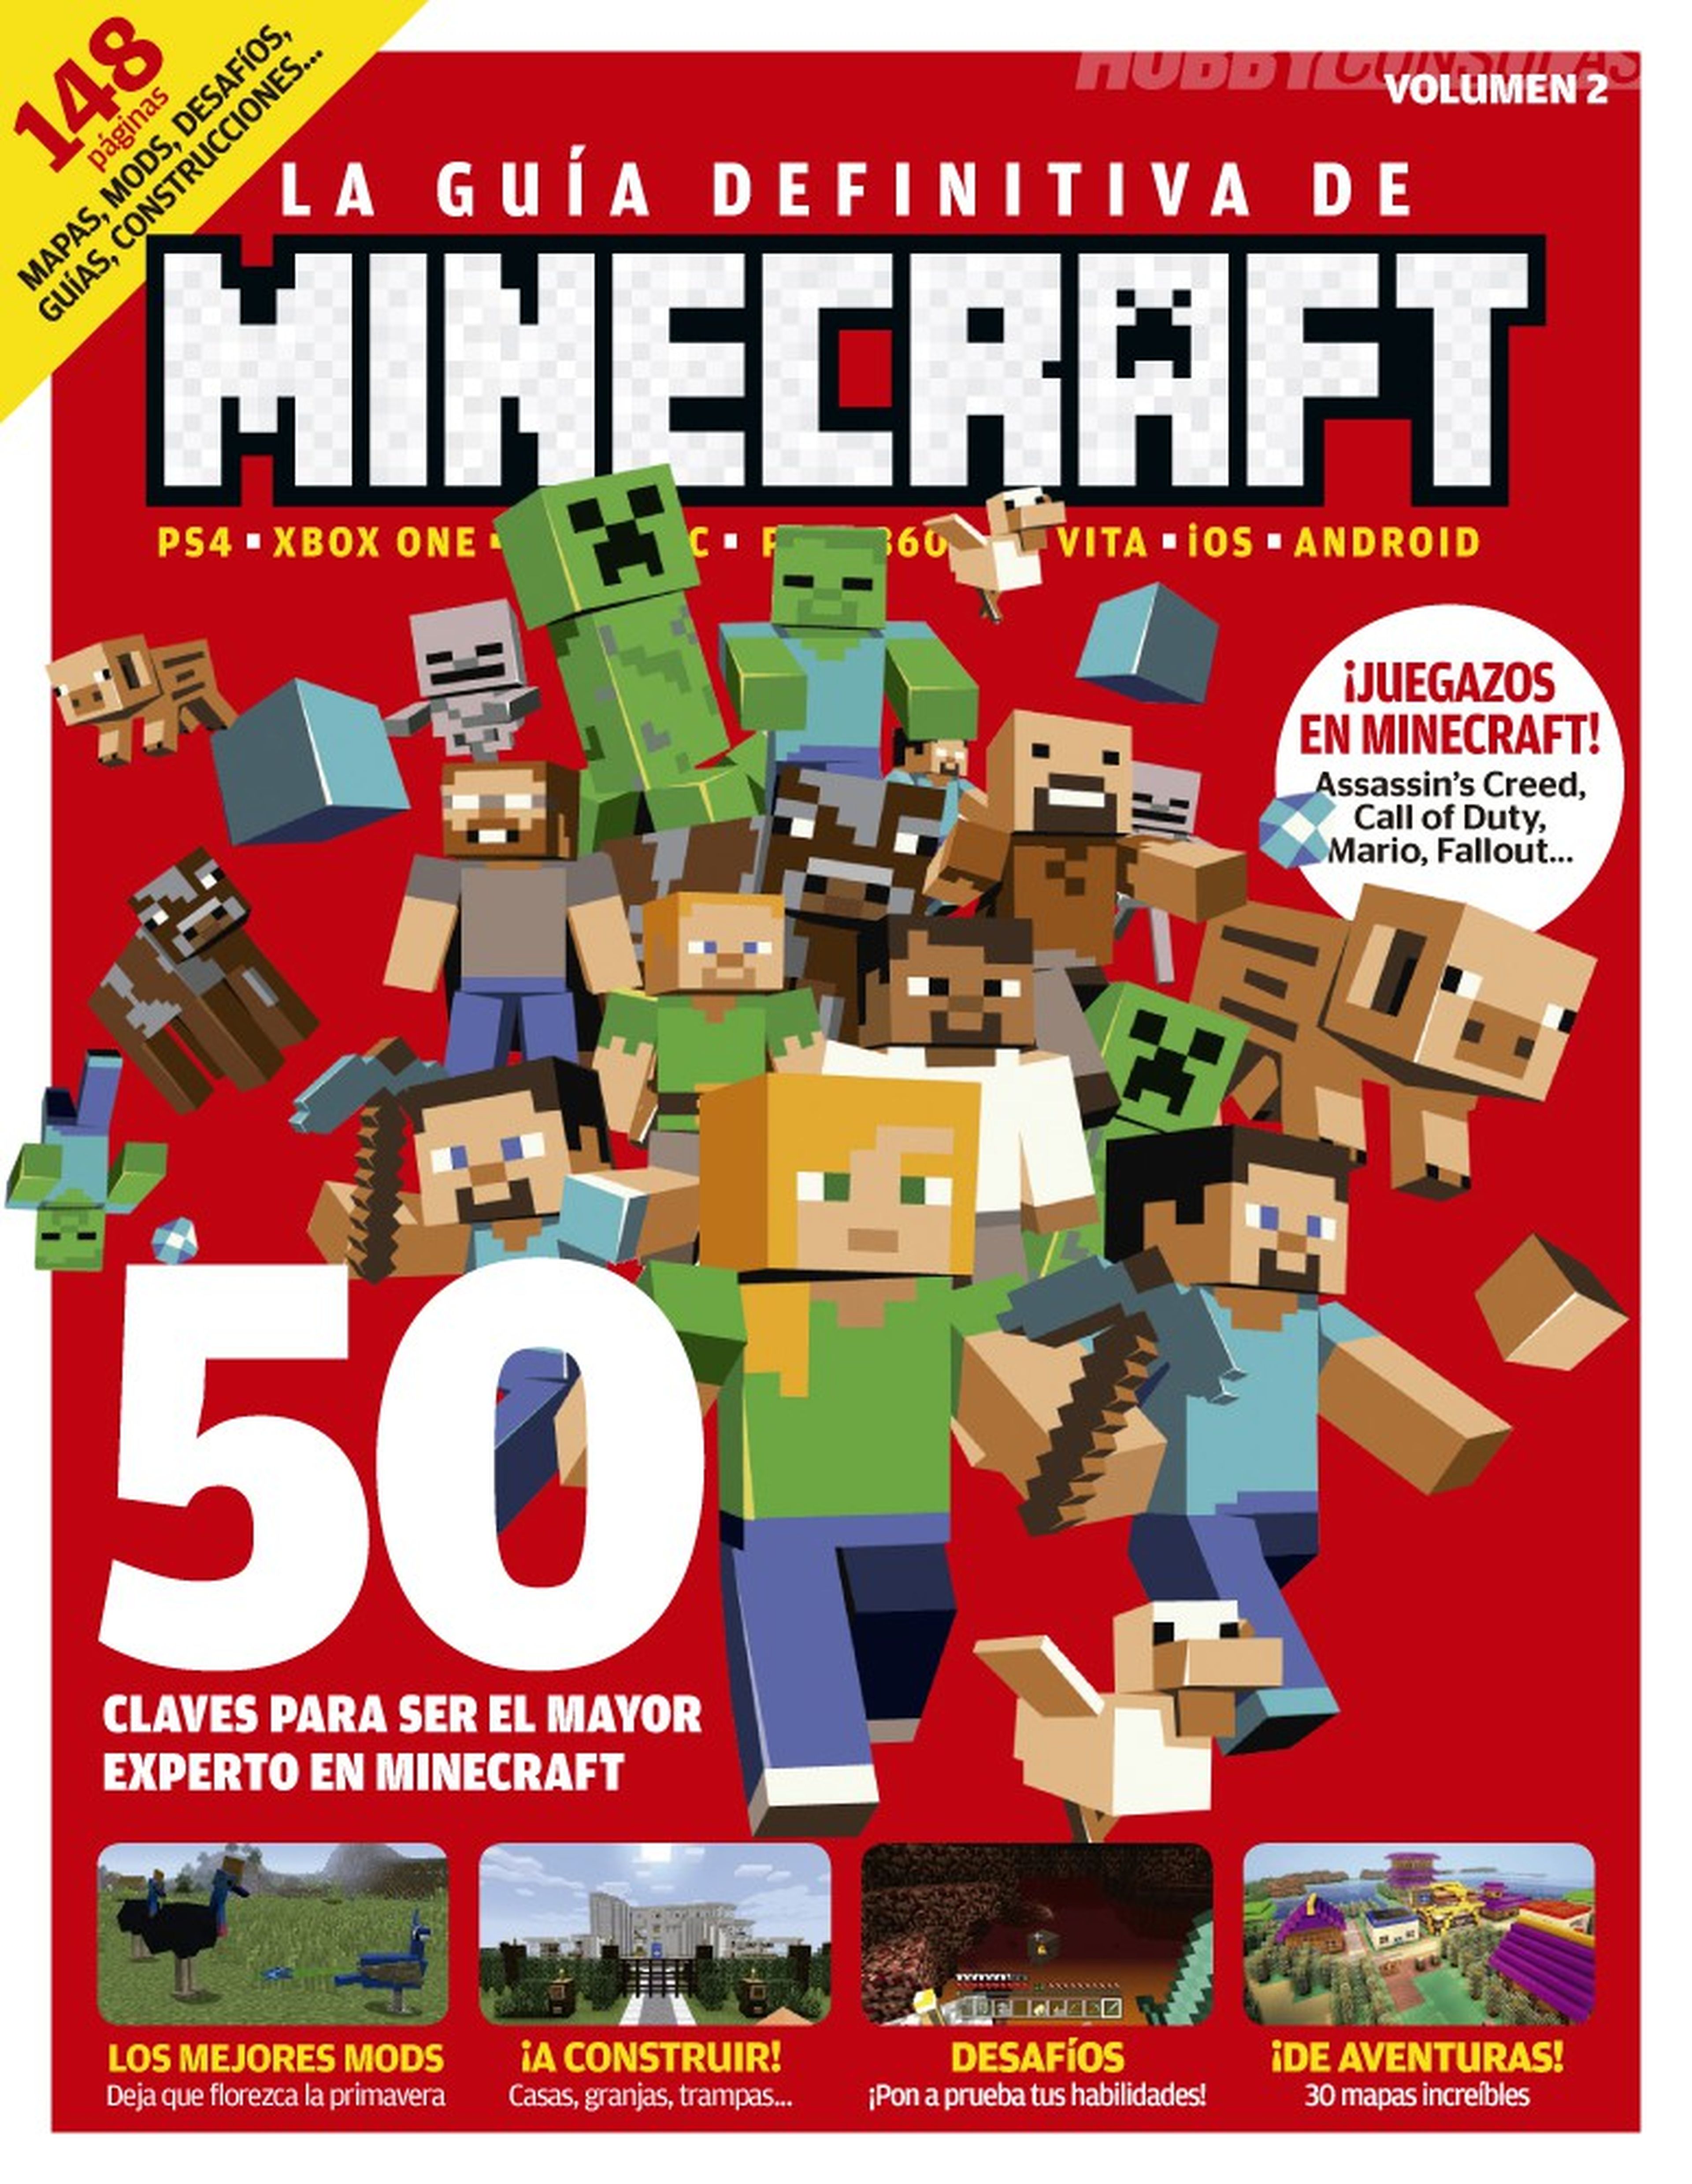 ¡La guía definitiva de Minecraft número 2 ya a la venta!